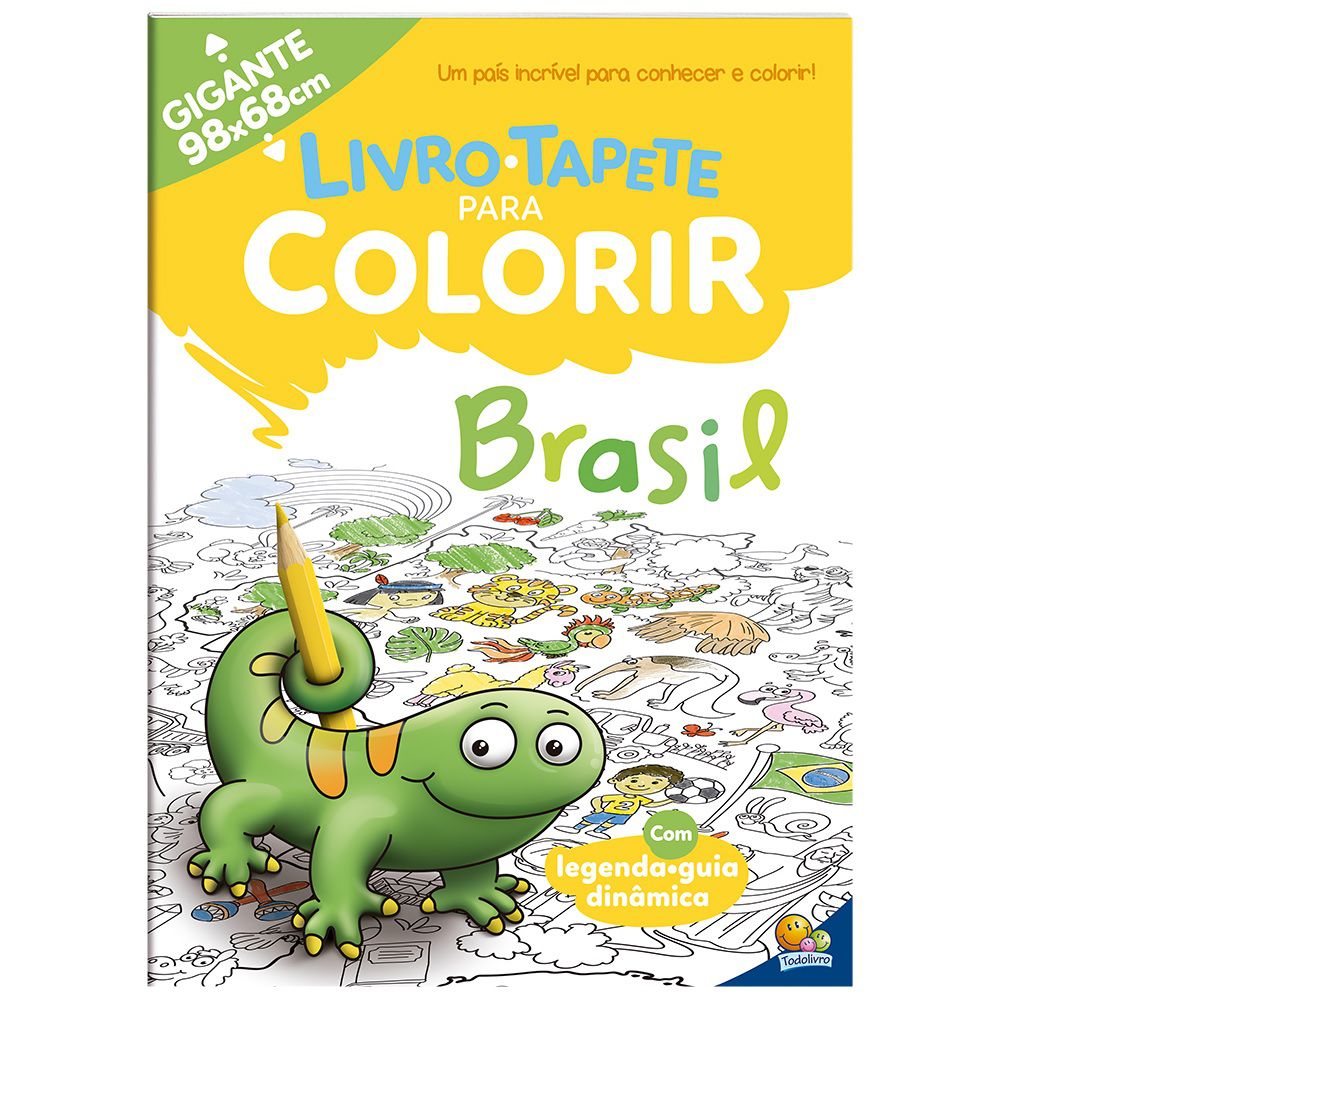 Livro-Tapete para Colorir: Mais de 100 Desenhos Incríveis